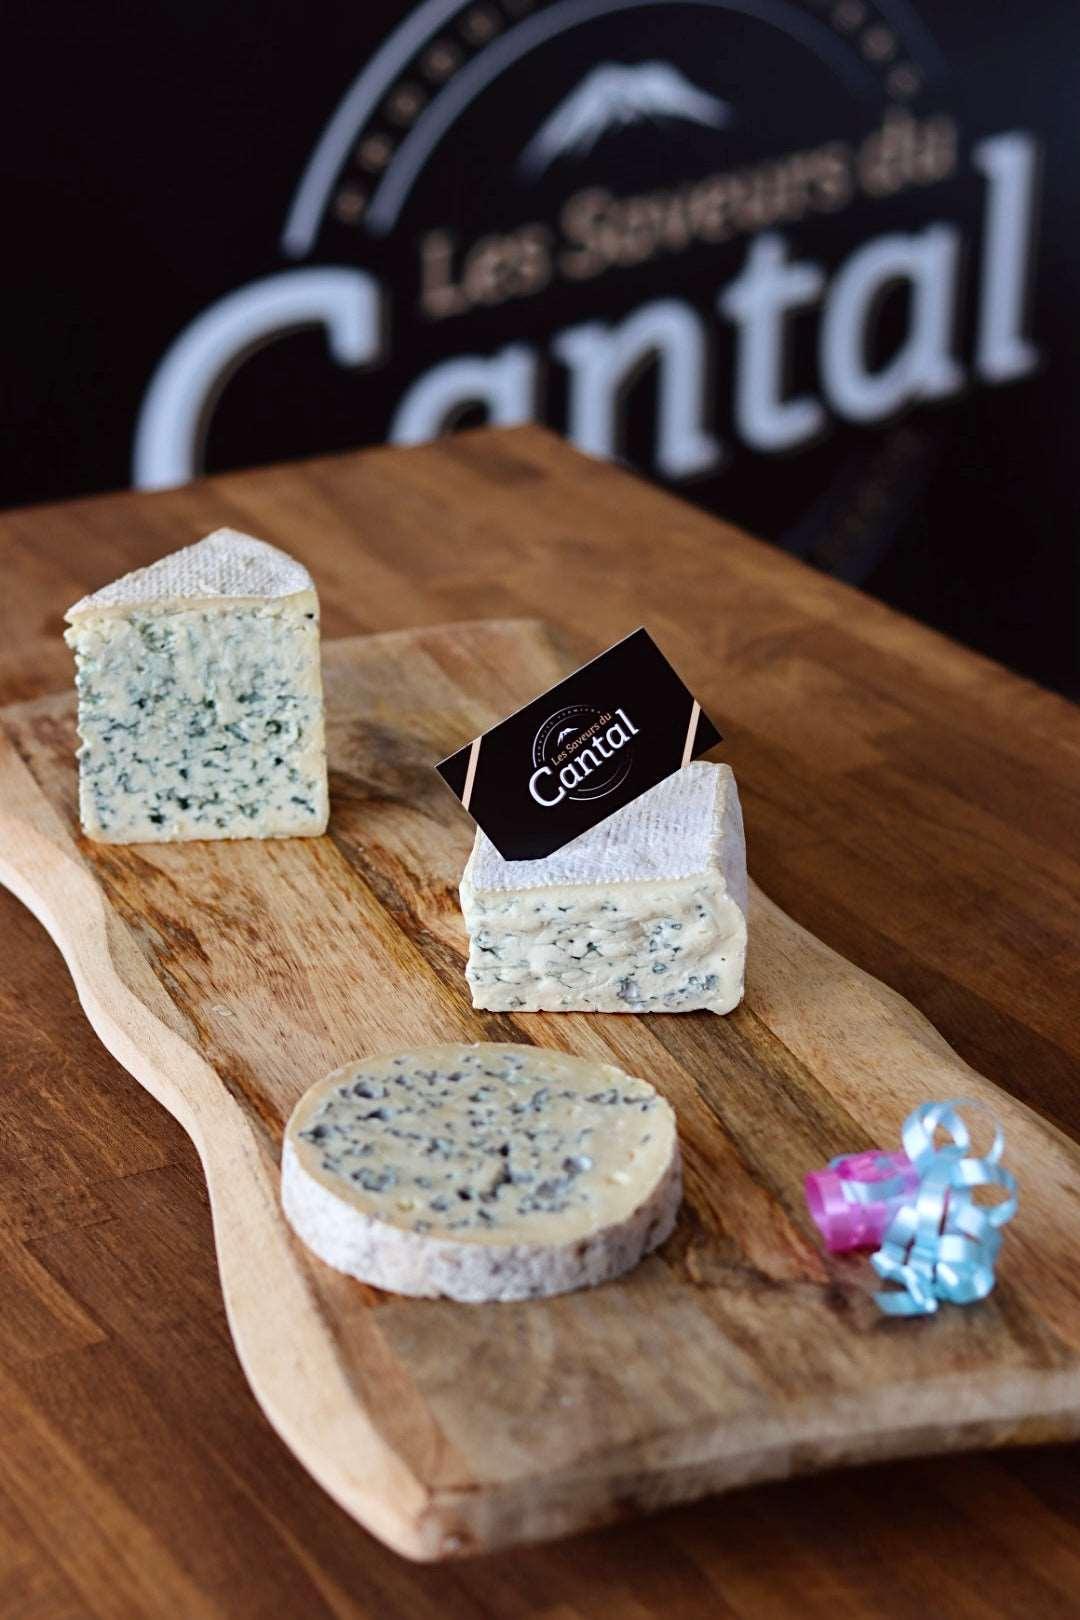 Le coffret 3 fromages inclut trois spécialités auvergnates incontournables : le Bleu d'Auvergne, la Fourme d'Ambert et le Carré d'Aurillac. Savourez la richesse des saveurs de ces fromages authentiques, qui reflètent le savoir-faire traditionnel de la région Auvergne.